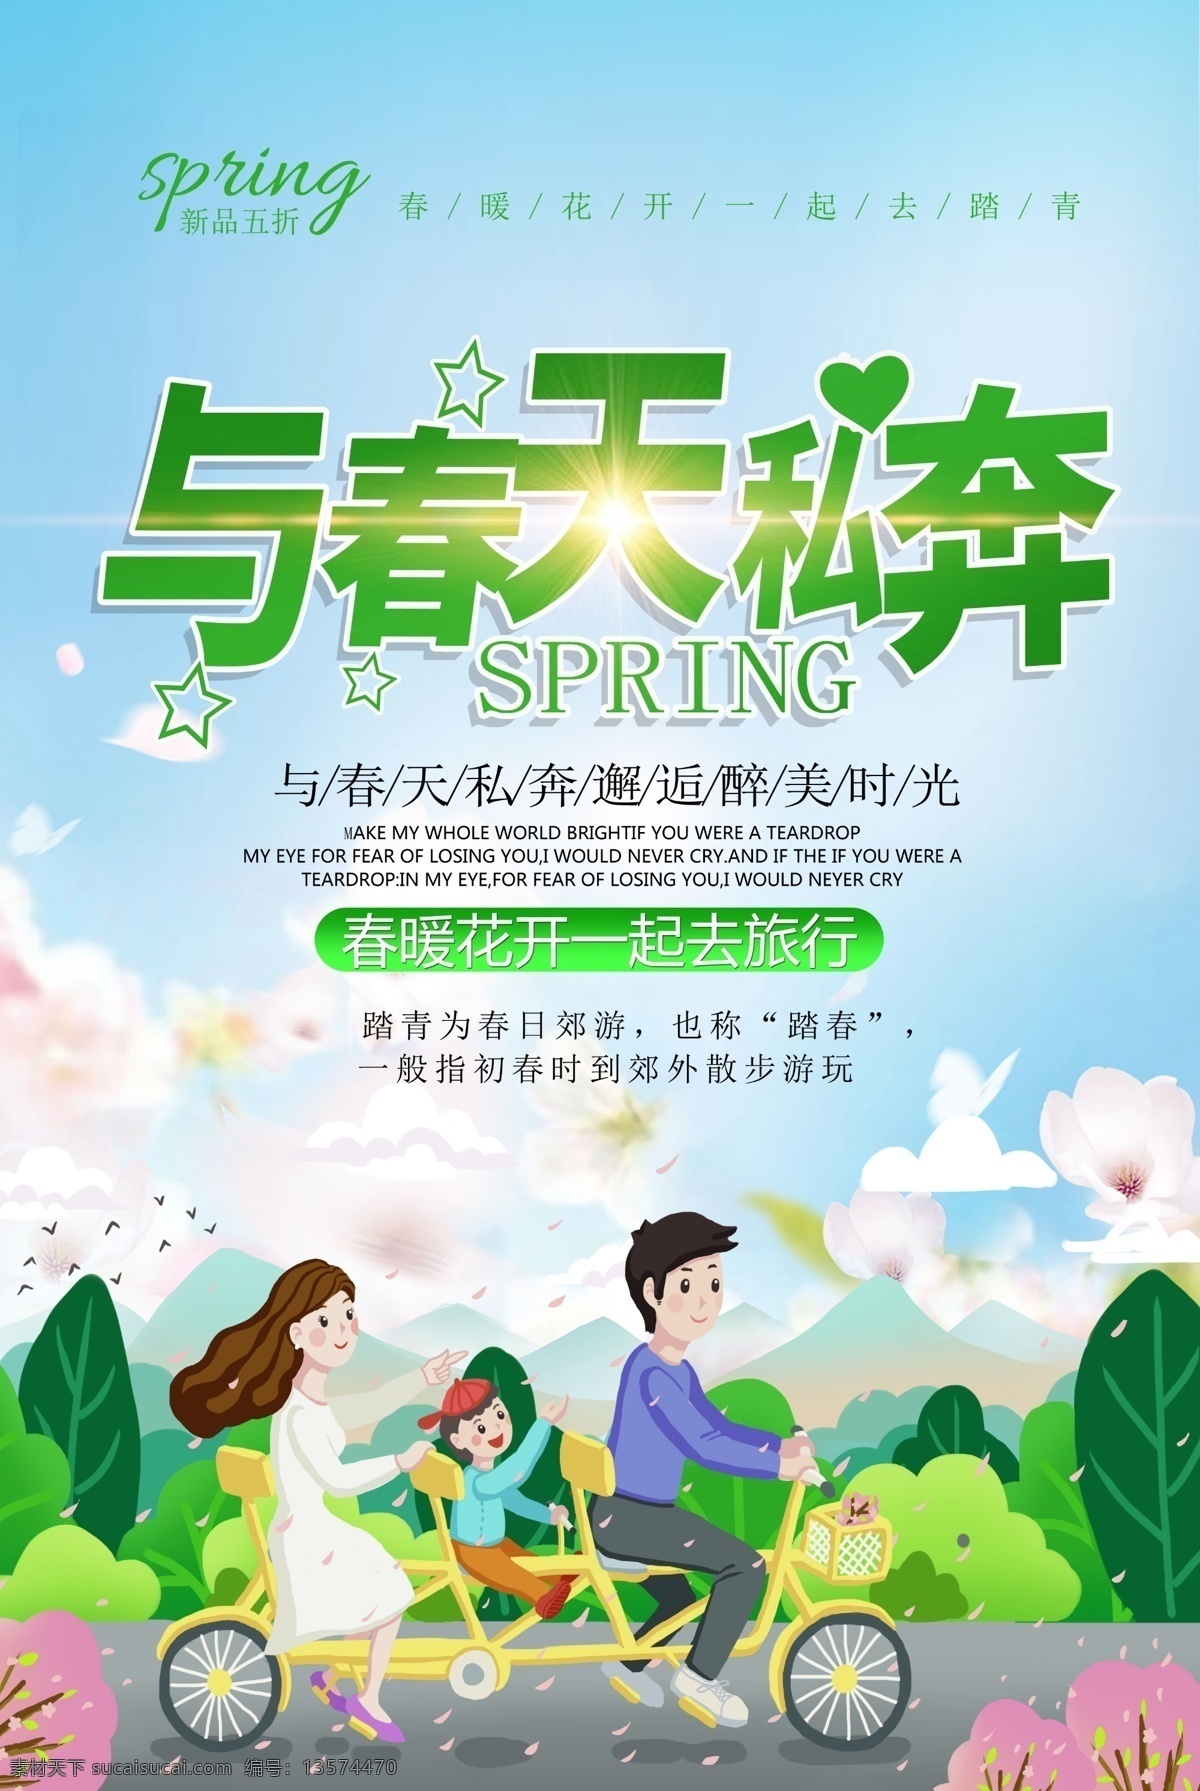 绿色 清新 春天 私奔 春游 海报 与春天 一起 2019 蓝色 春季出游 旅行海报